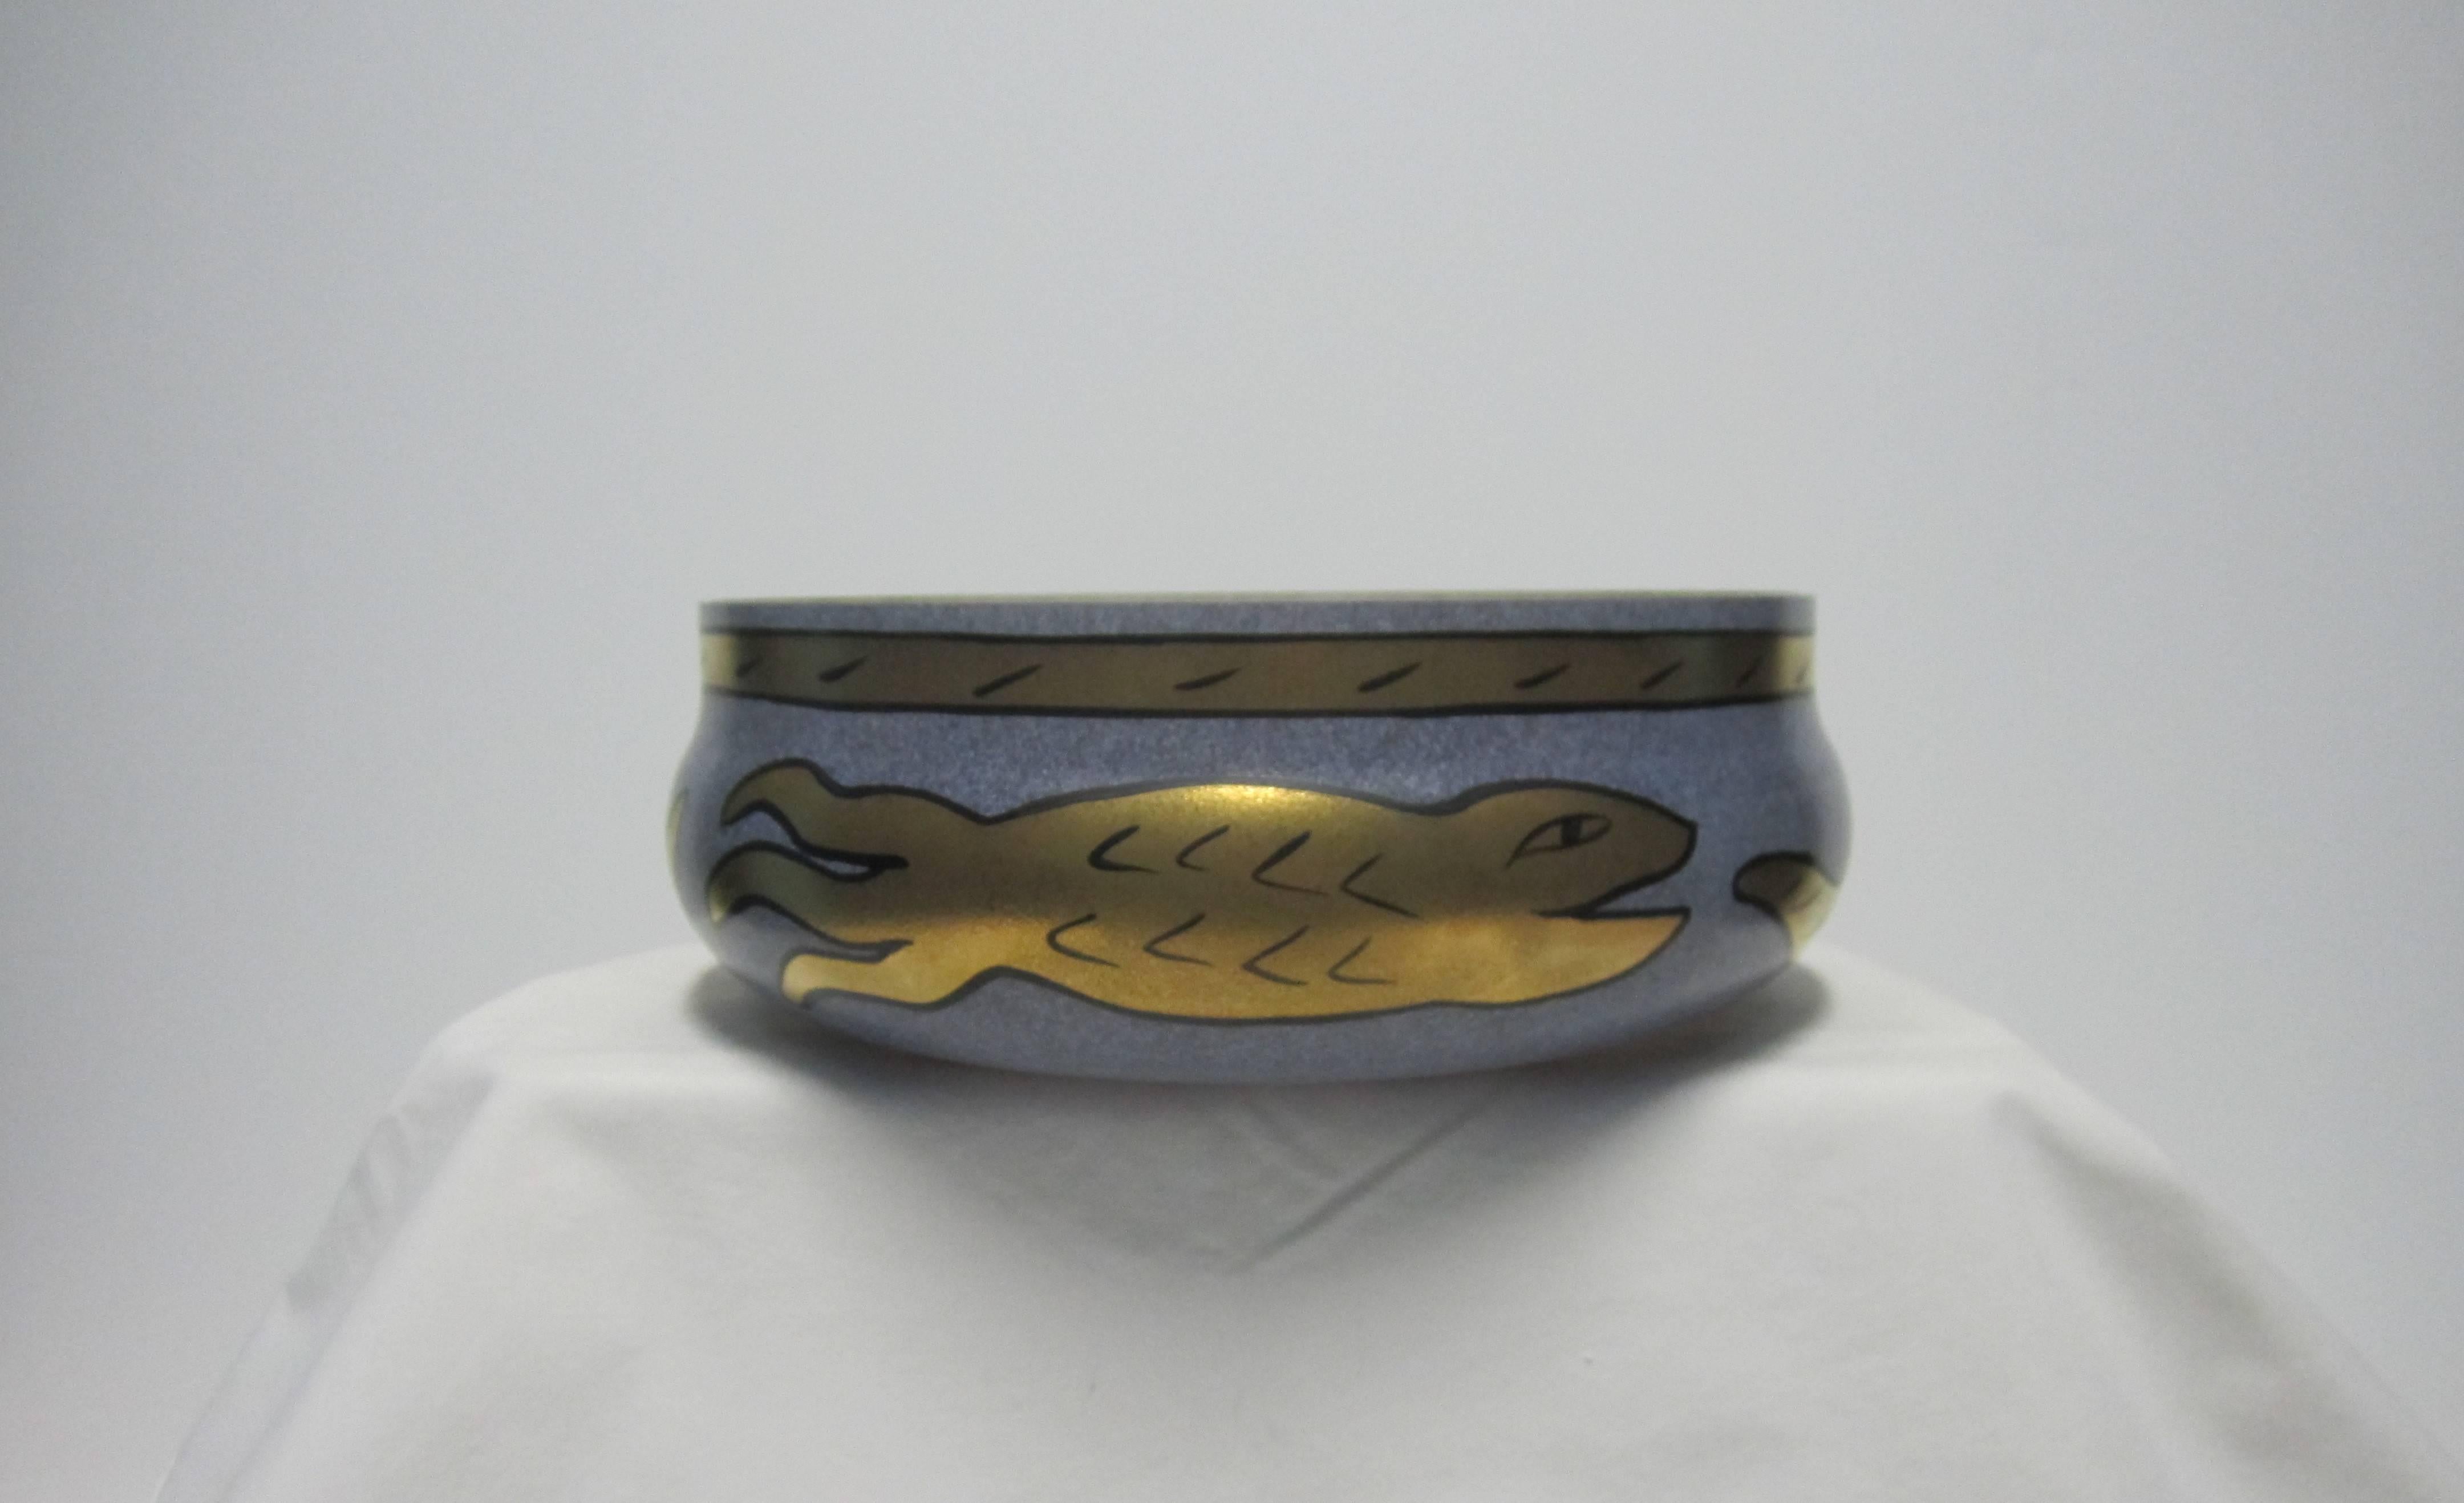 Art Glass Signed Scandinavian Glass Centerpiece Bowl with Gold Serpent Snake, 1990s